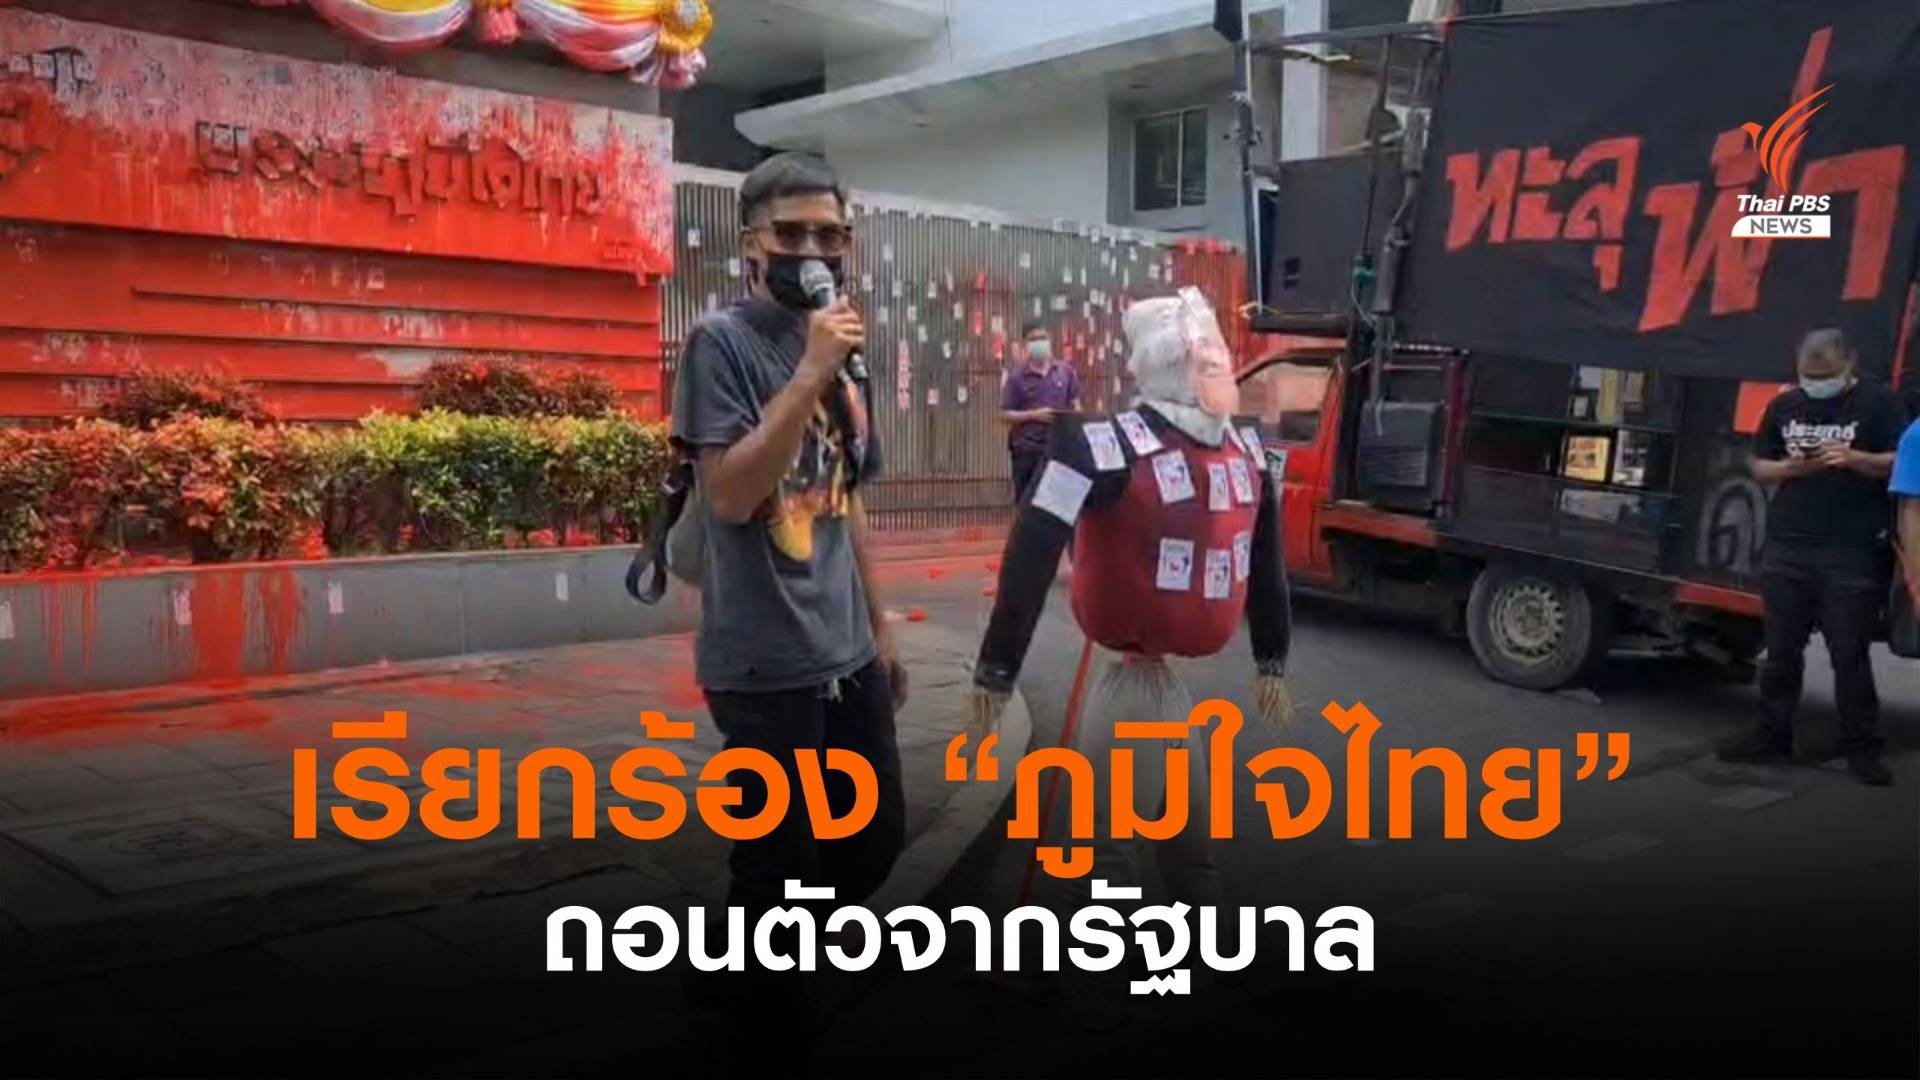 กลุ่มผู้ชุมนุมเรียกร้องให้ "ภูมิใจไทย" ถอนตัวจากรัฐบาล